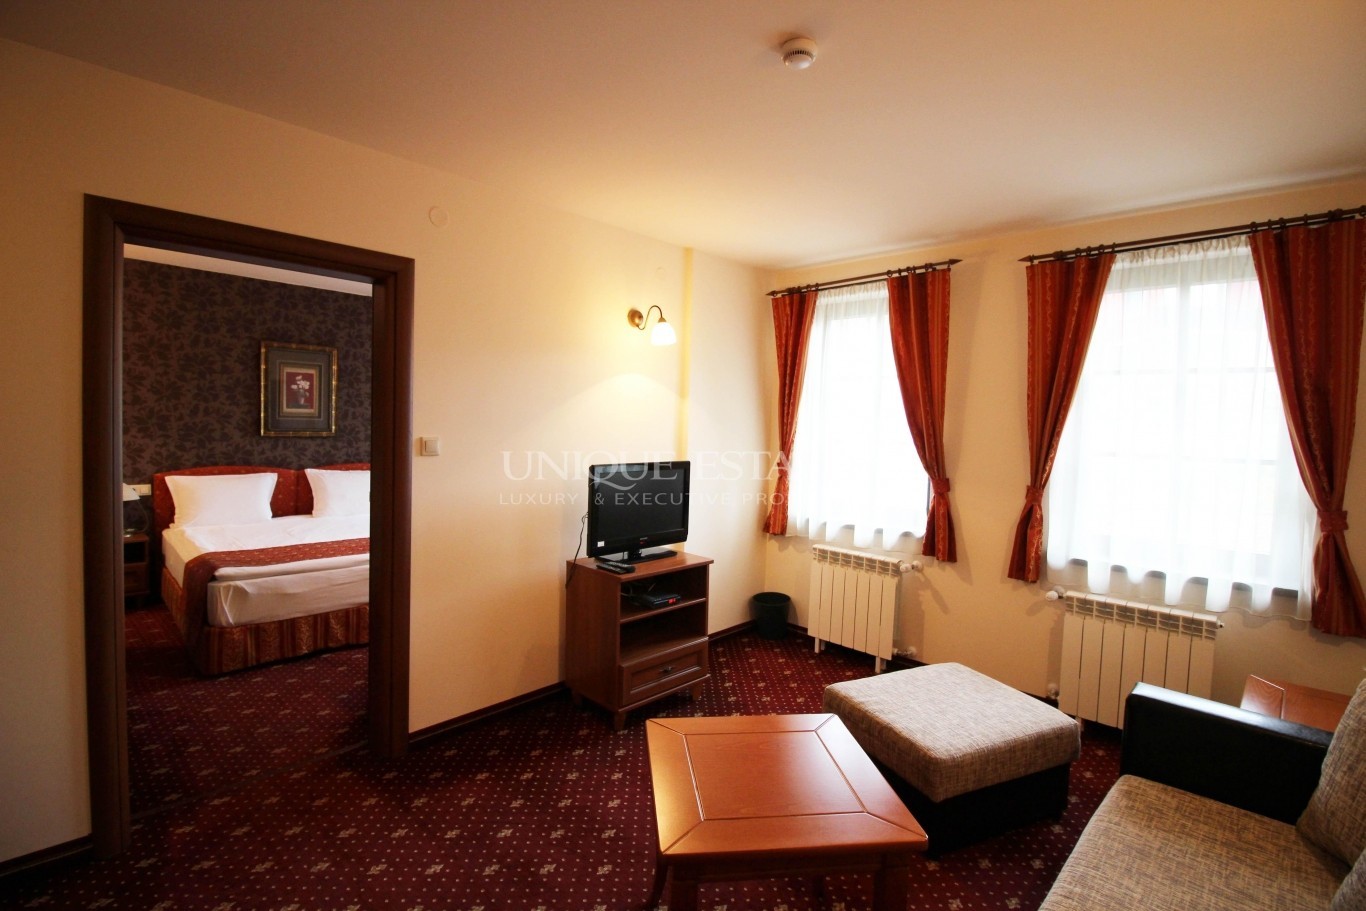 Хотел / Apartment house за продажба в Копривщица,  - код на имота: K7408 - image 8